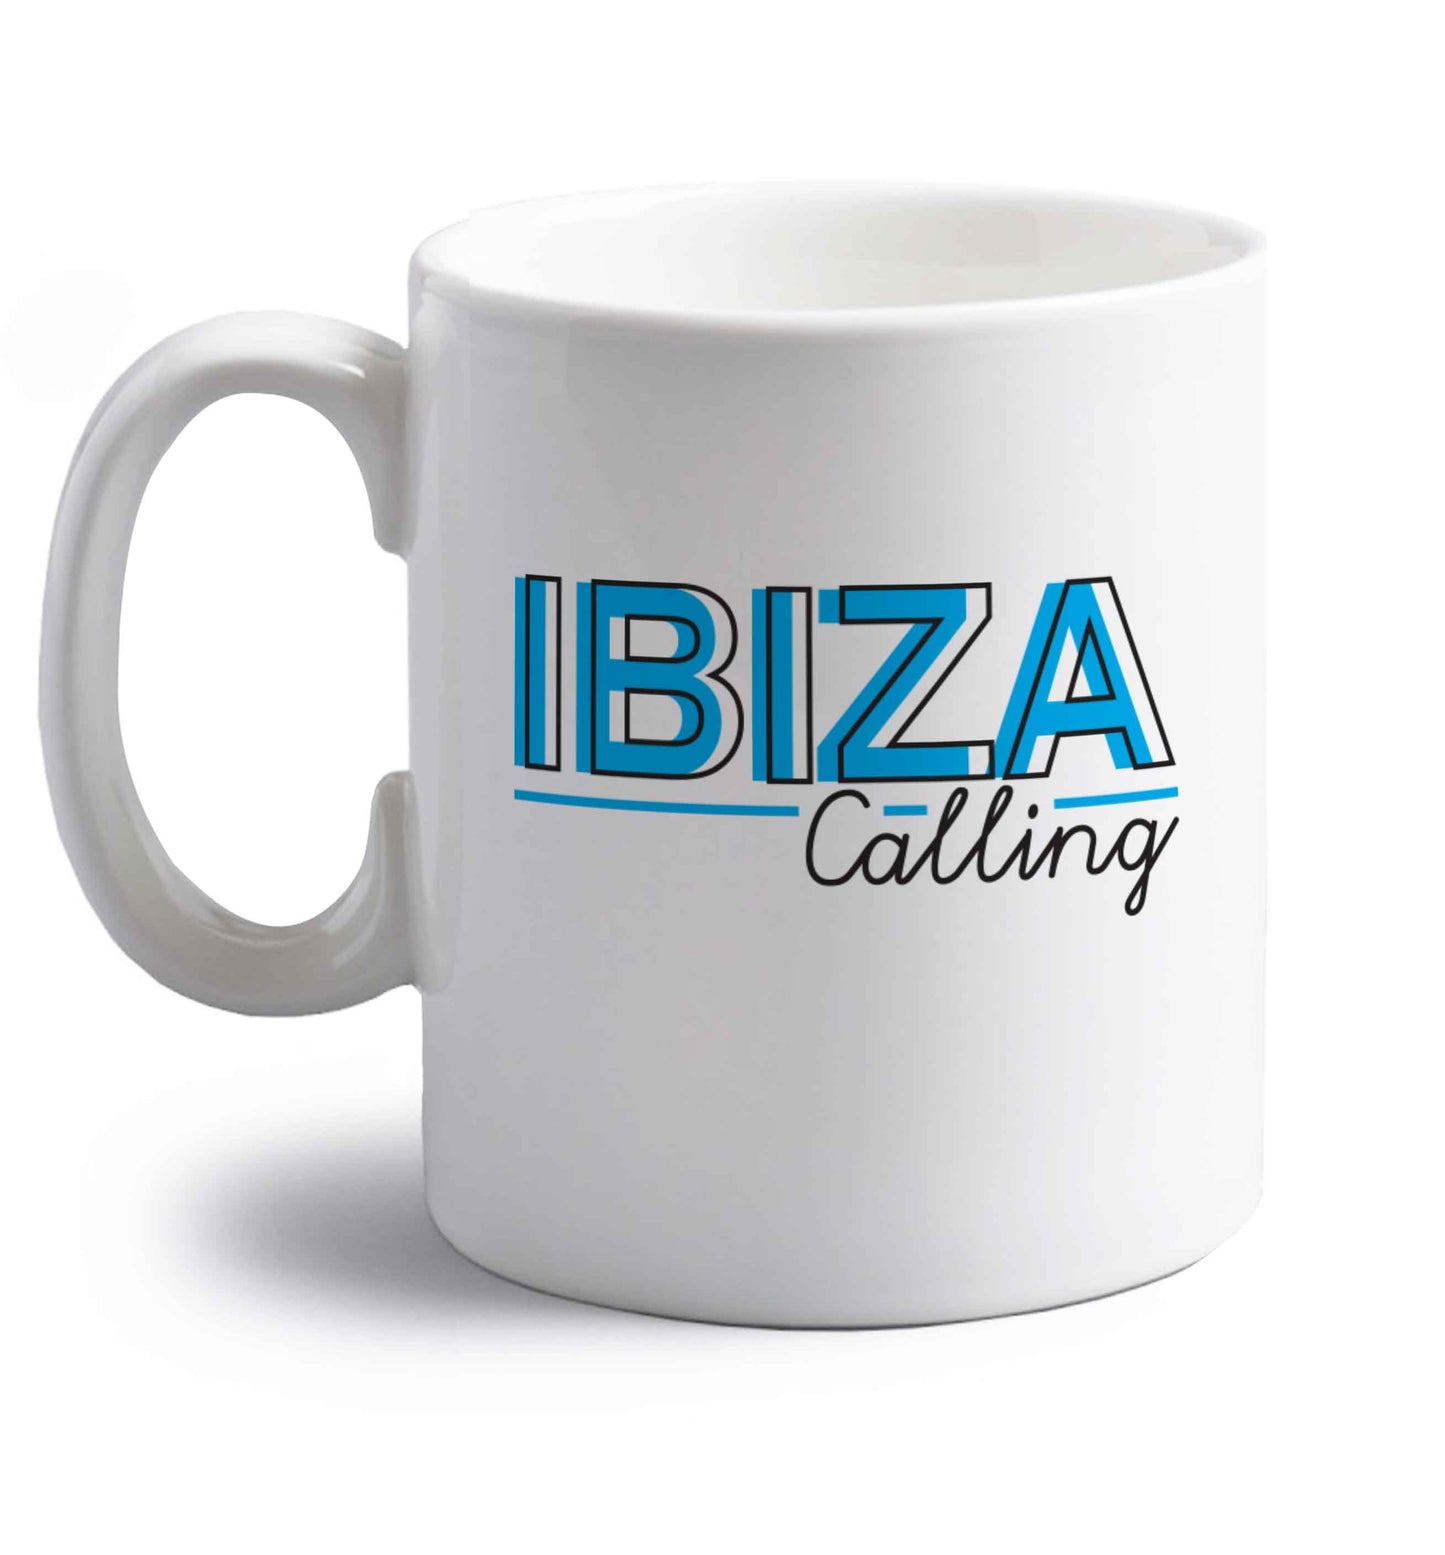 Ibiza calling right handed white ceramic mug 